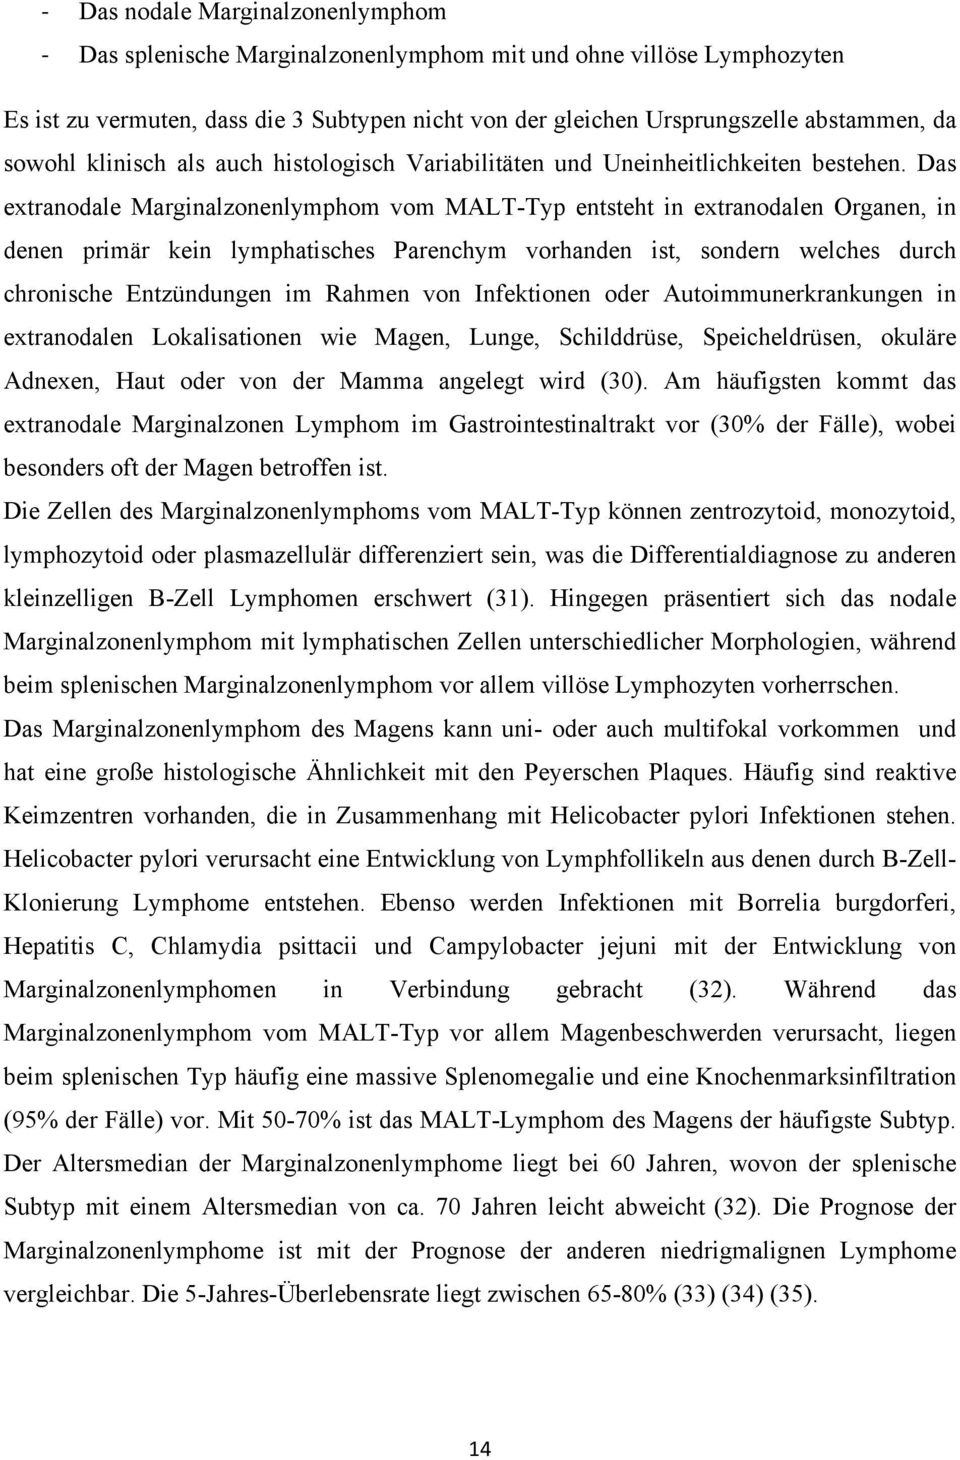 Das extranodale Marginalzonenlymphom vom MALT-Typ entsteht in extranodalen Organen, in denen primär kein lymphatisches Parenchym vorhanden ist, sondern welches durch chronische Entzündungen im Rahmen